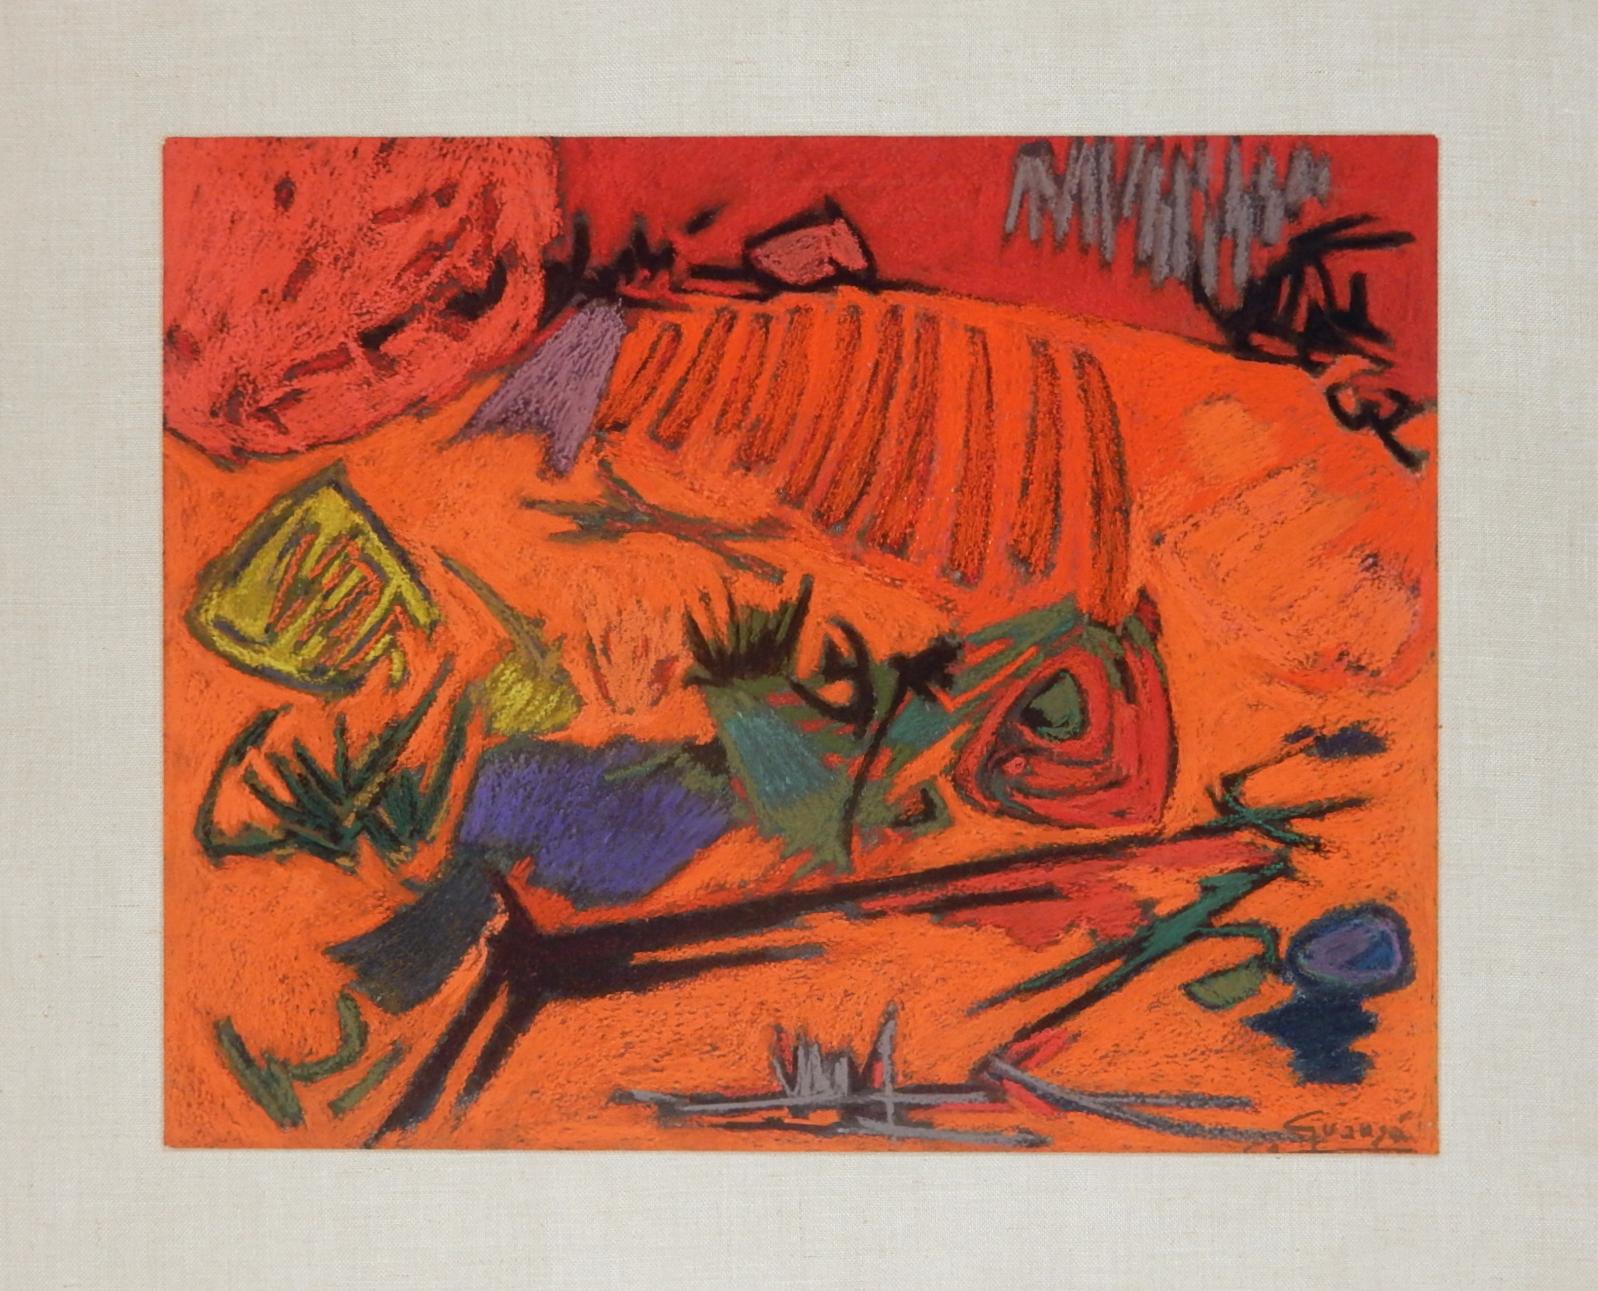 Außergewöhnliches Acrylgemälde des spanischen Künstlers Antonio Guanse' (1926-2008).
Signiert unten links, betitelt und datiert verso
Die Farben sind leuchtend und intensiv.
Dies ist ein Original aus der Pariser Galerie, betitelt, gestempelt und